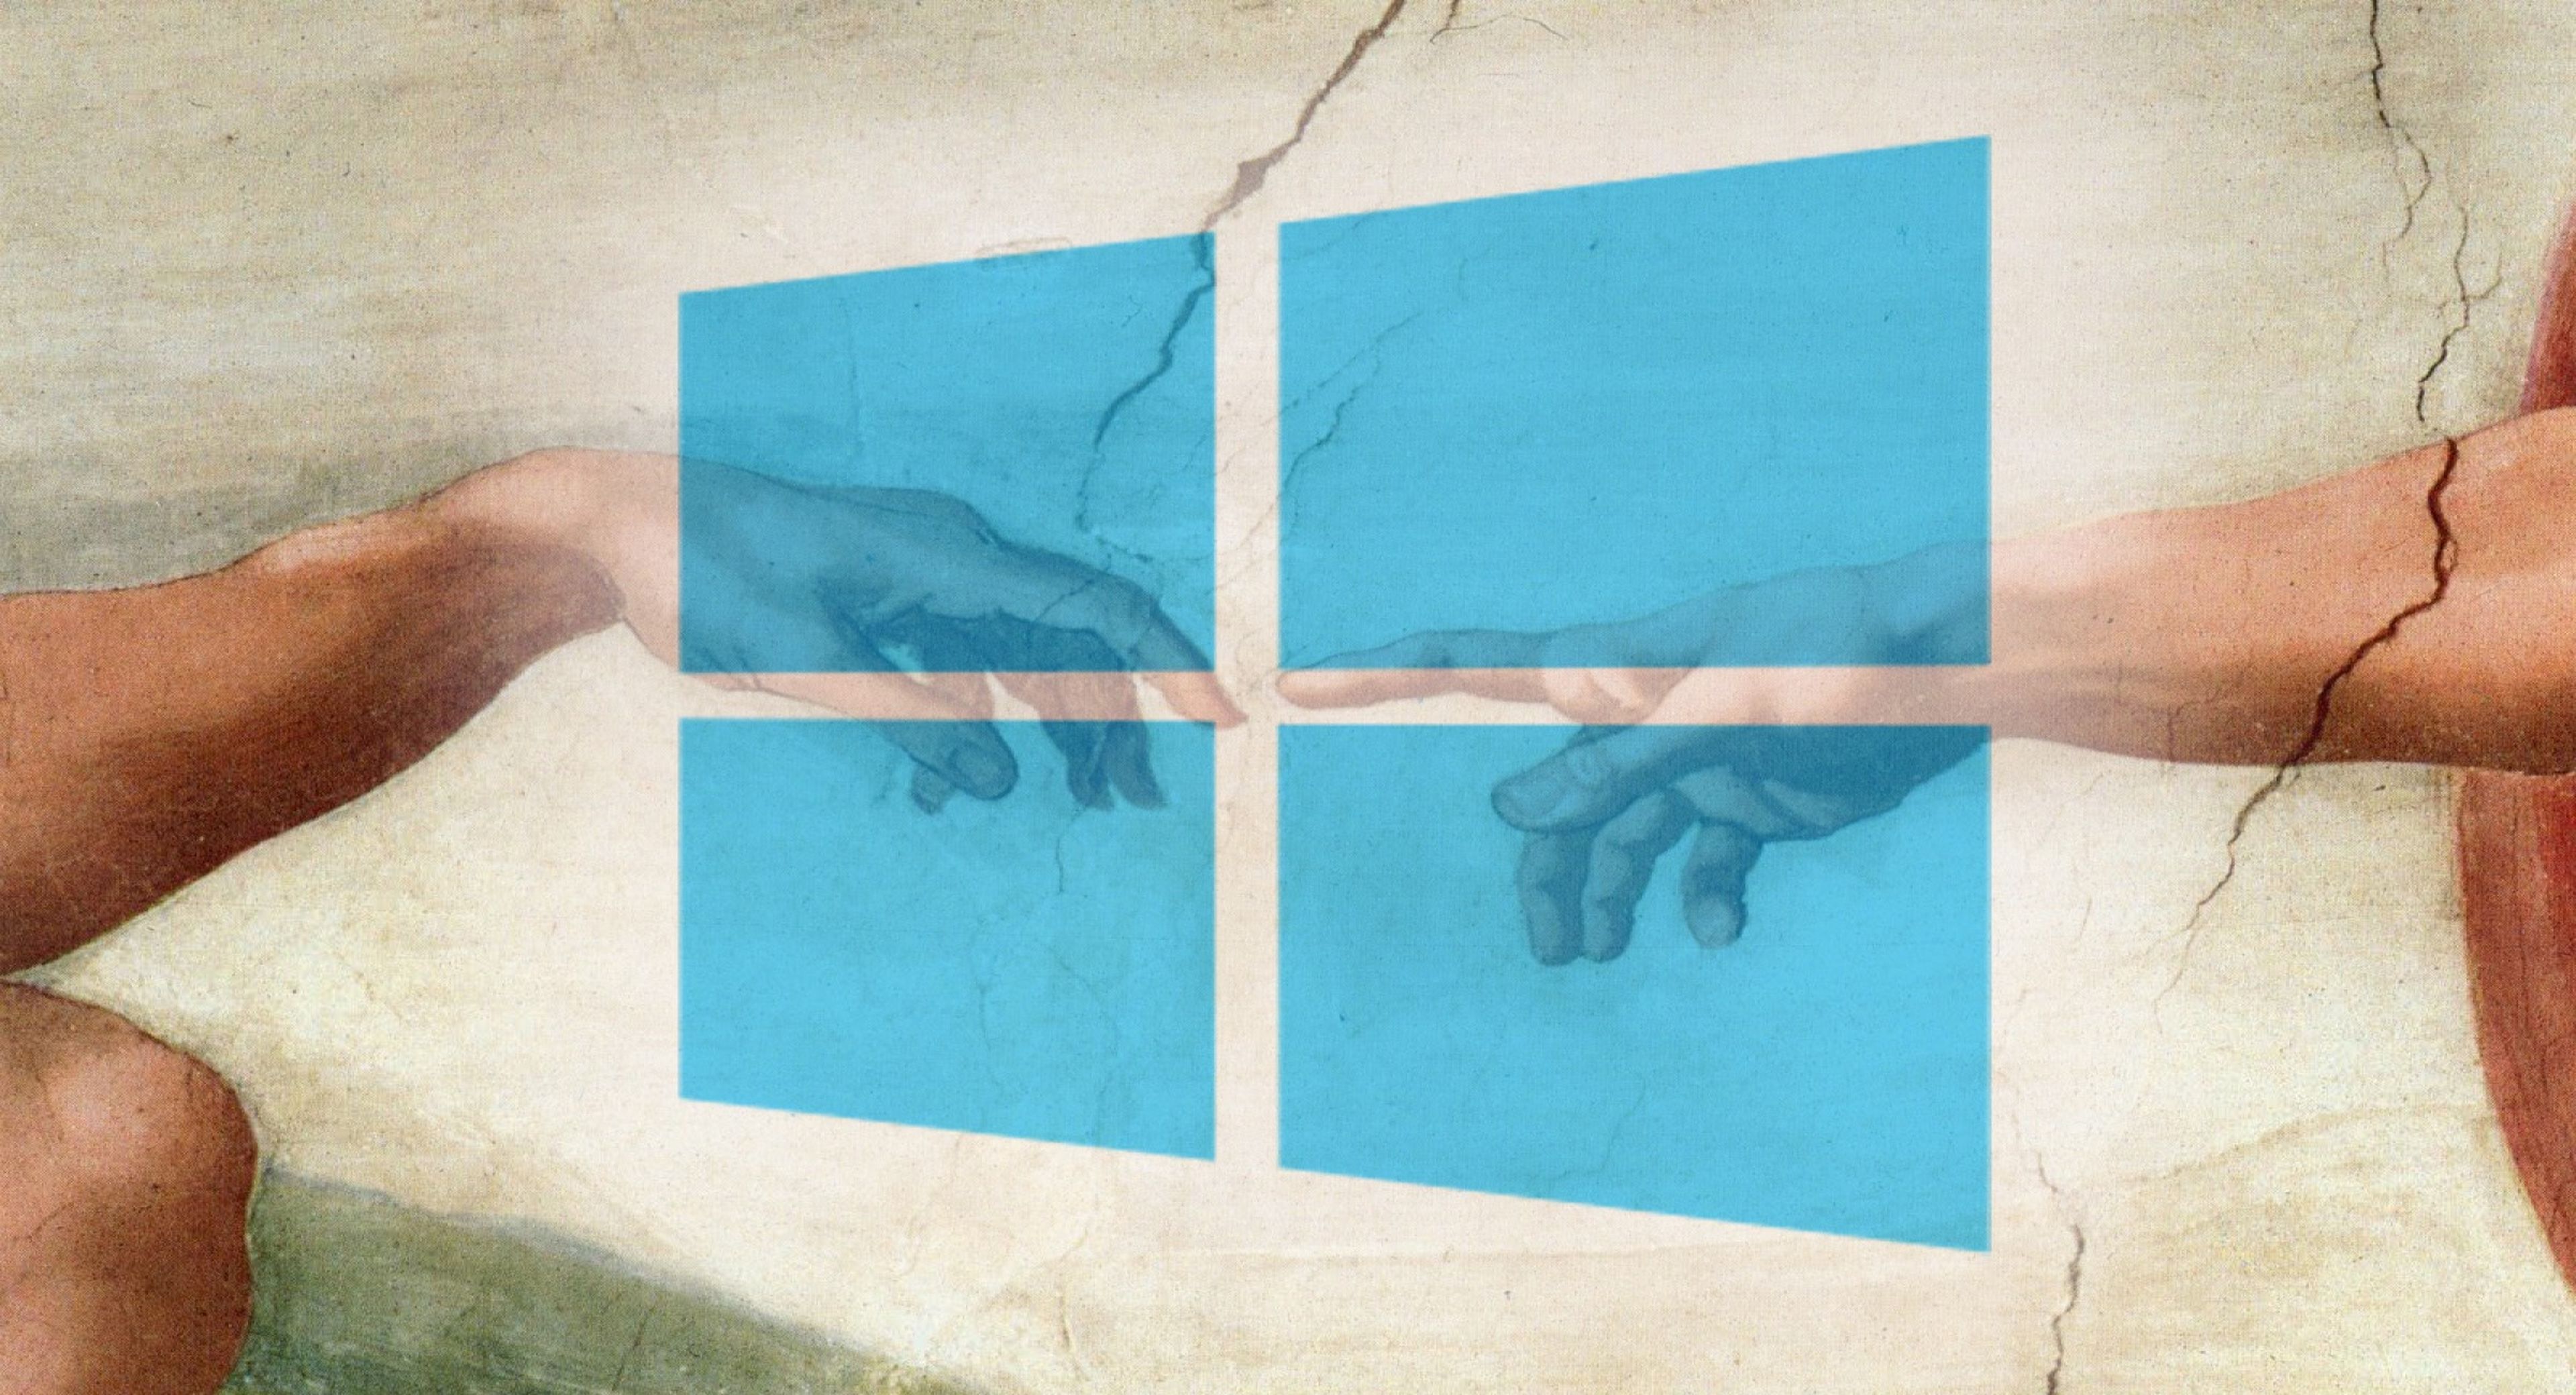 Qué es el modo Dios de Windows 10 y todo lo que puedes hacer en 2021